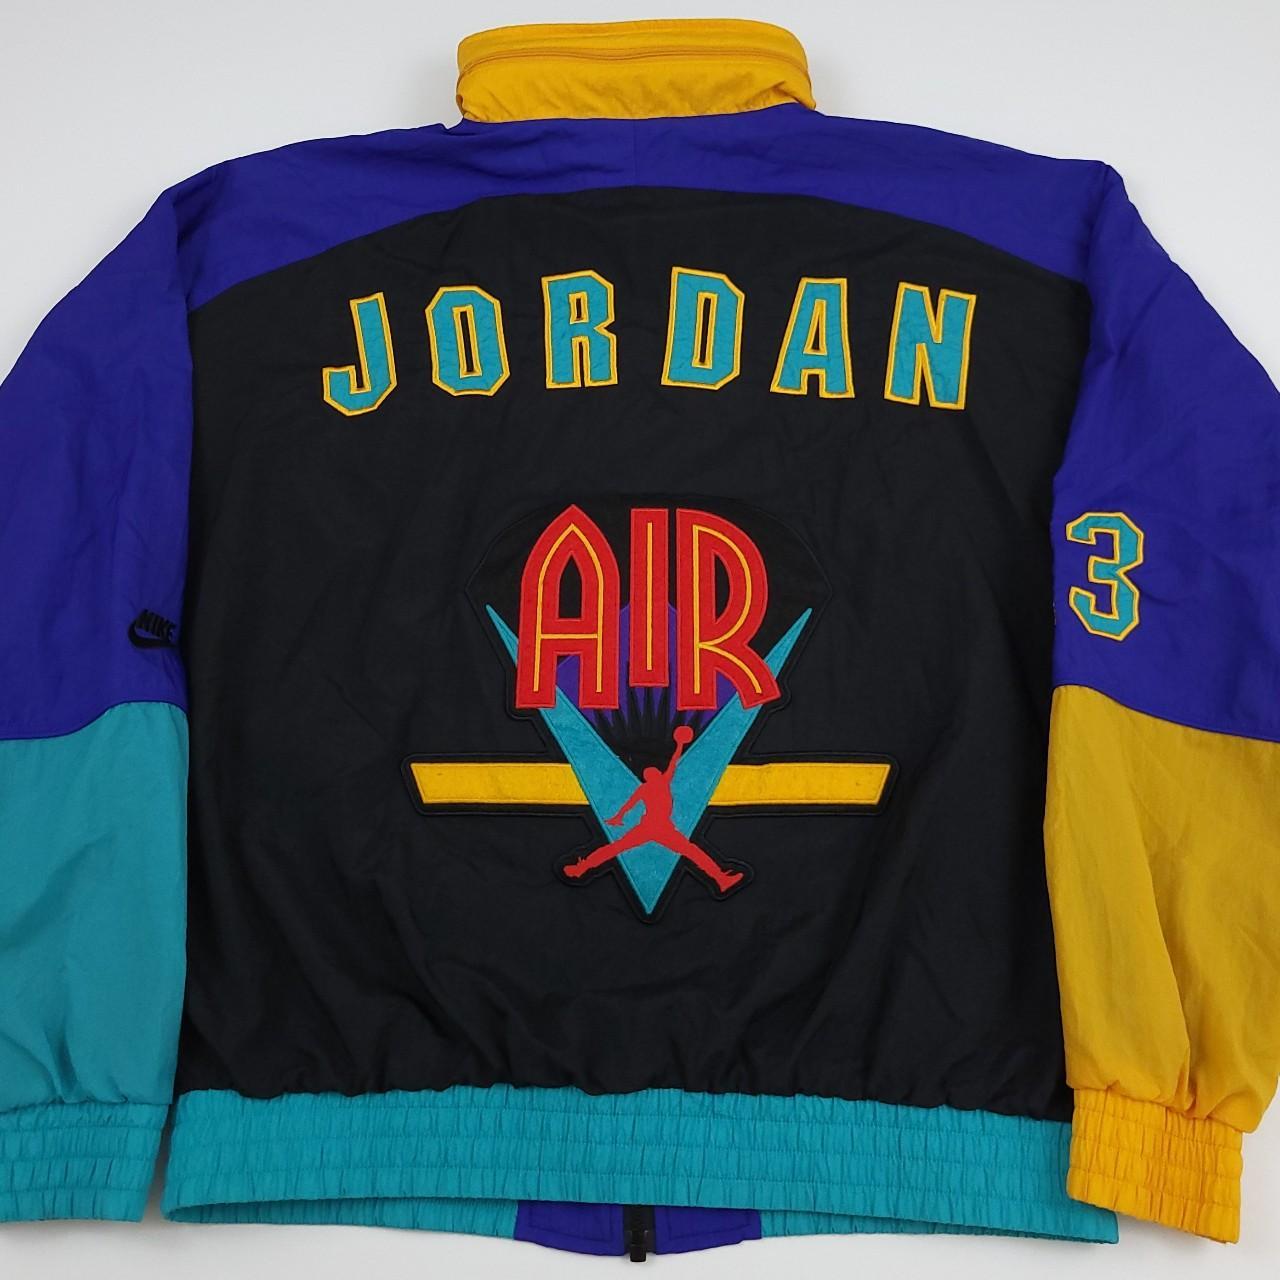 Vintage 90s Nike Air Jordan windbreaker jacket....